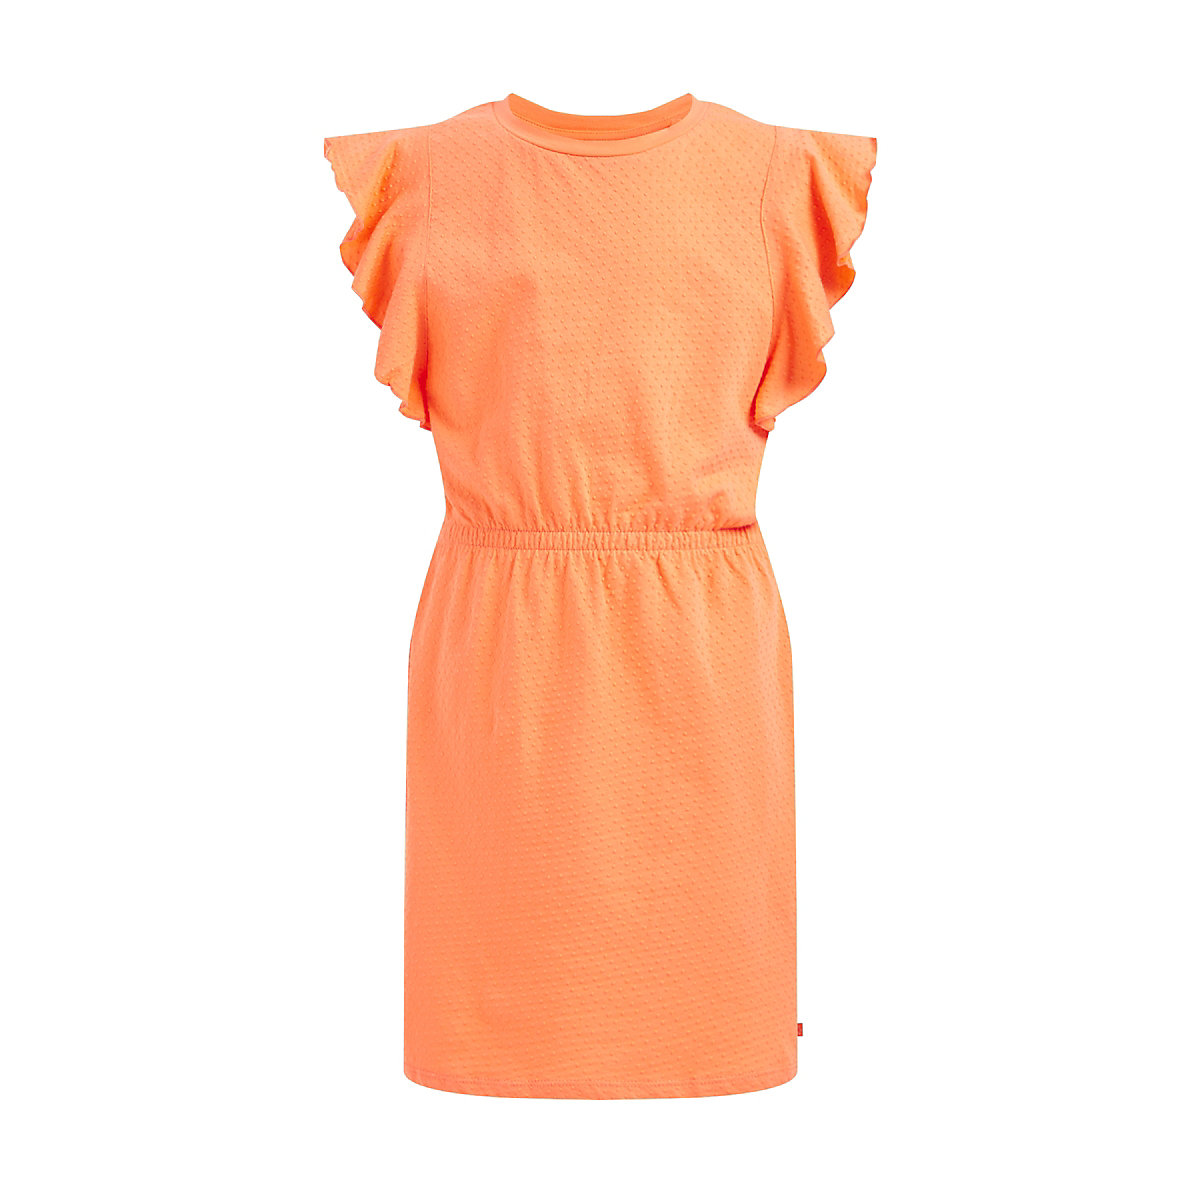 WE Fashion Mädchenkleid mit Strukturmuster Kleider für Mädchen orange